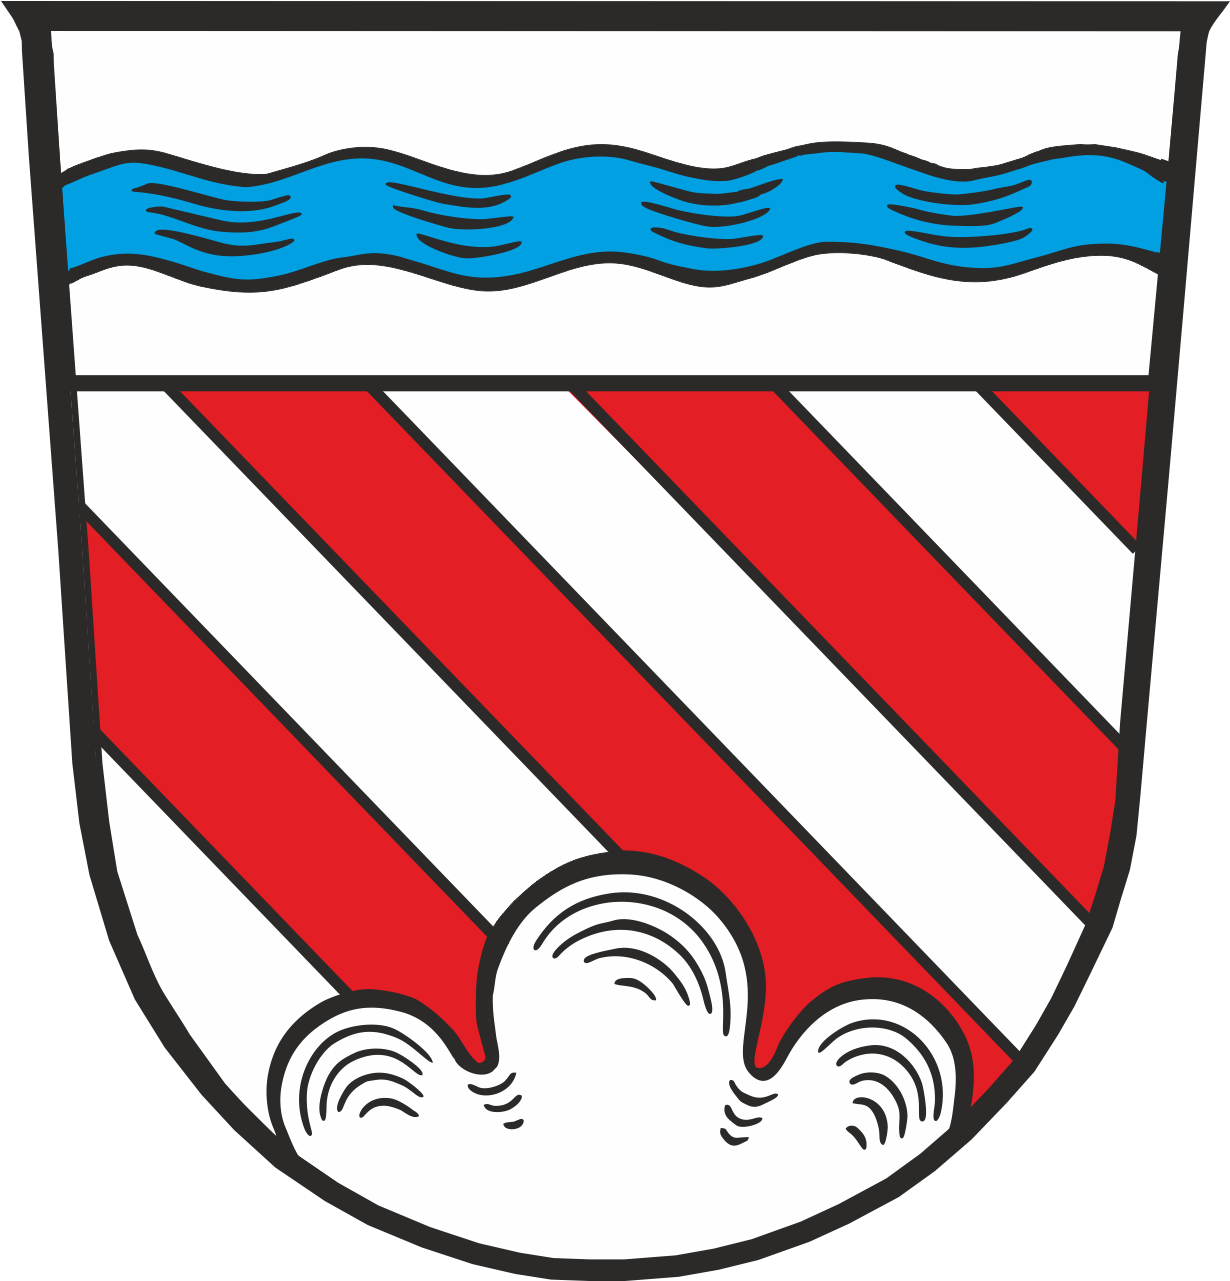 Gemeinde Tiefenbach Wappengeschichte - Coalicion Canaria (1280x1280)